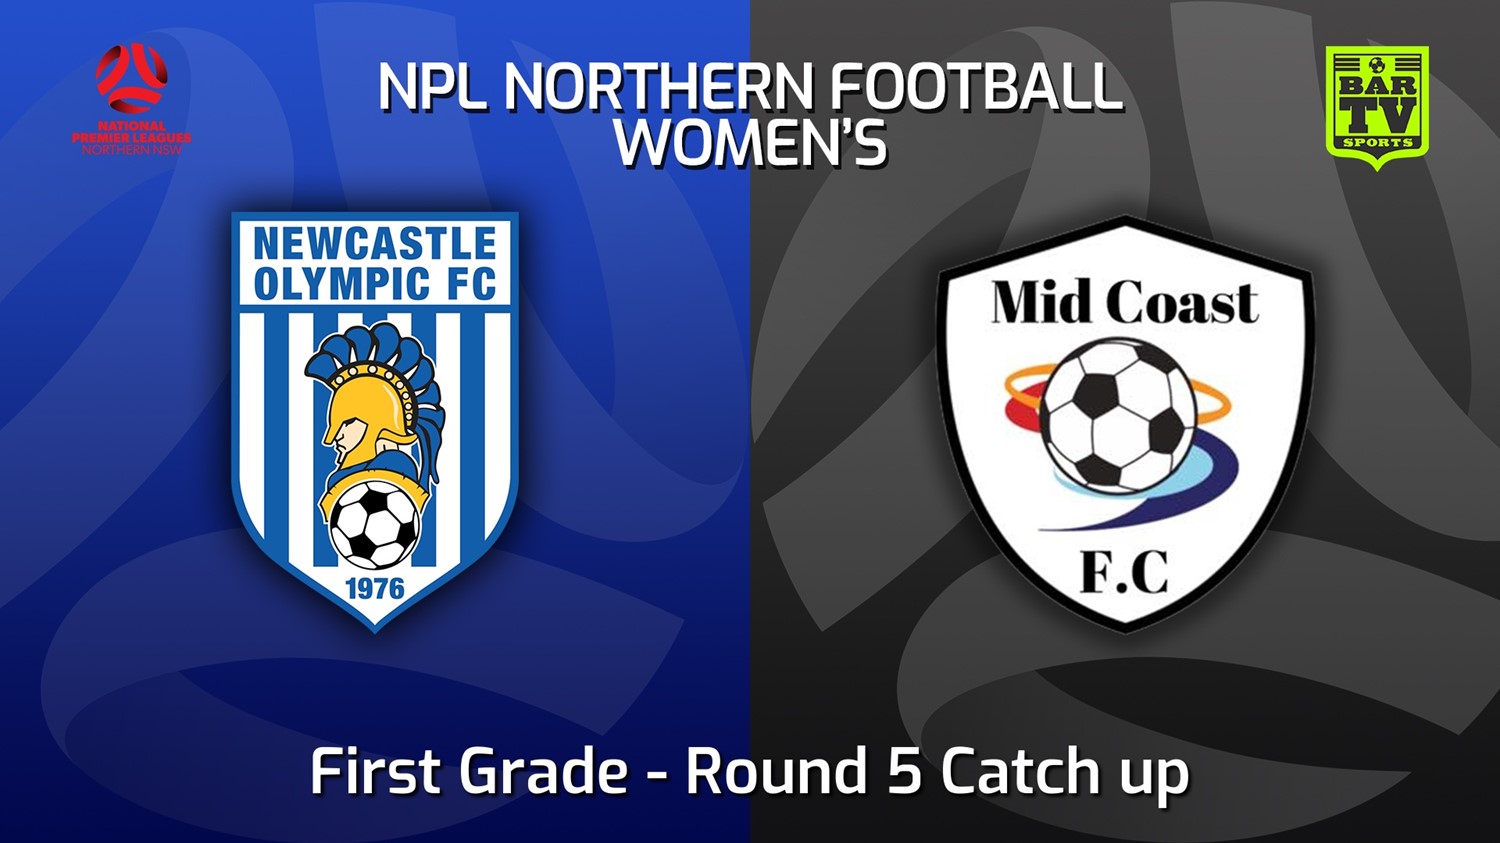 220613-NNSW NPLW Round 5 Catch up - Newcastle Olympic FC W v Mid Coast FC W Minigame Slate Image